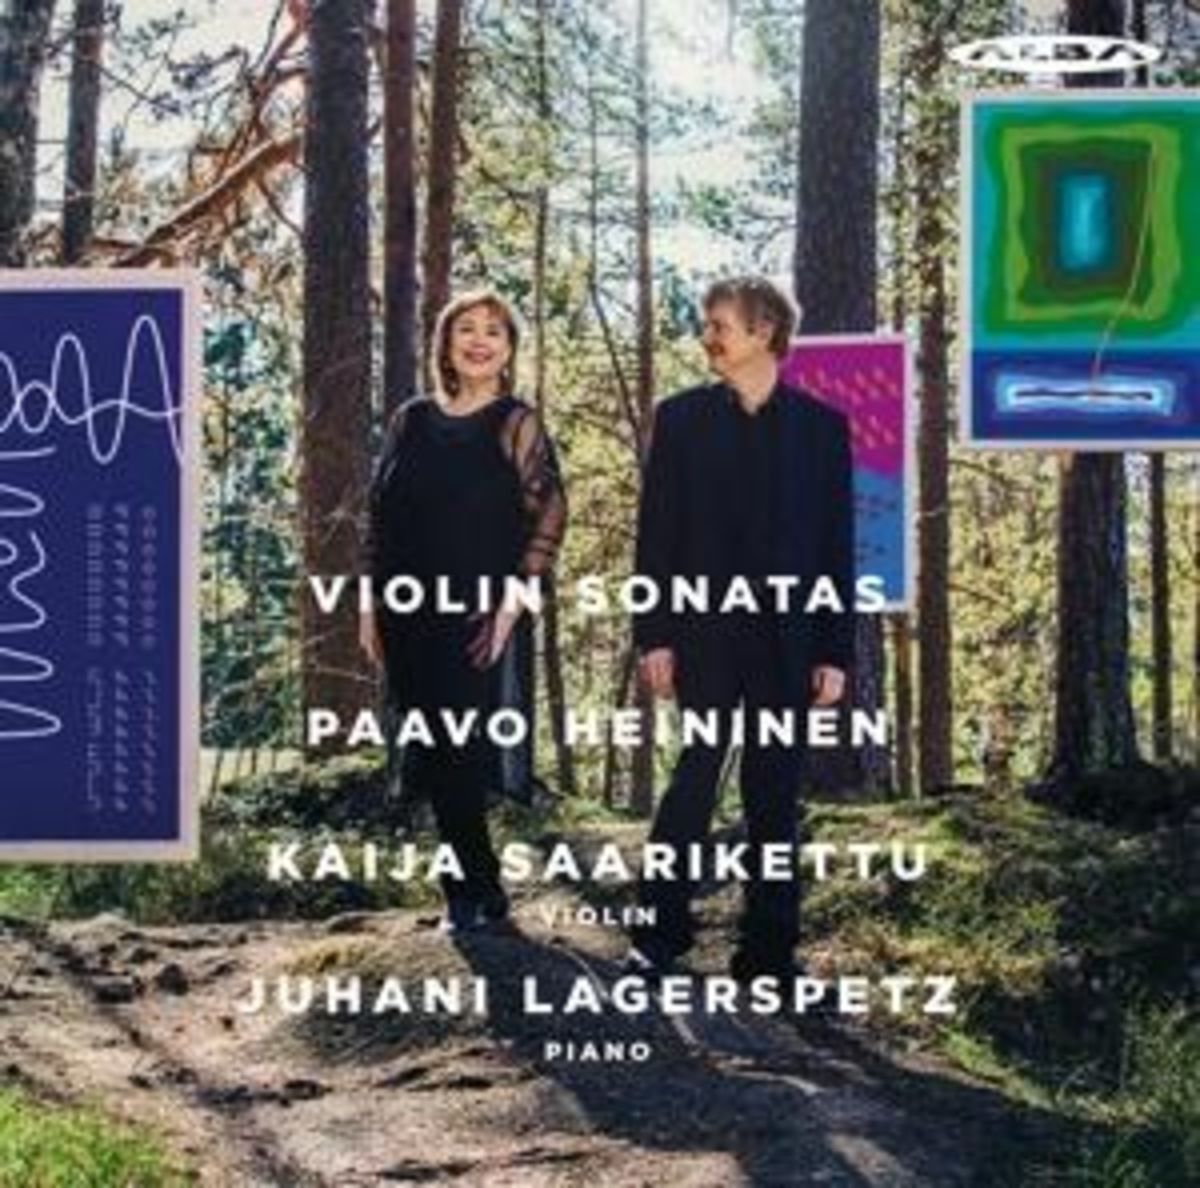 Violinsonaten von Kaija Saarikettu, Juhani Lagerspetz. Musik | Orell Füssli